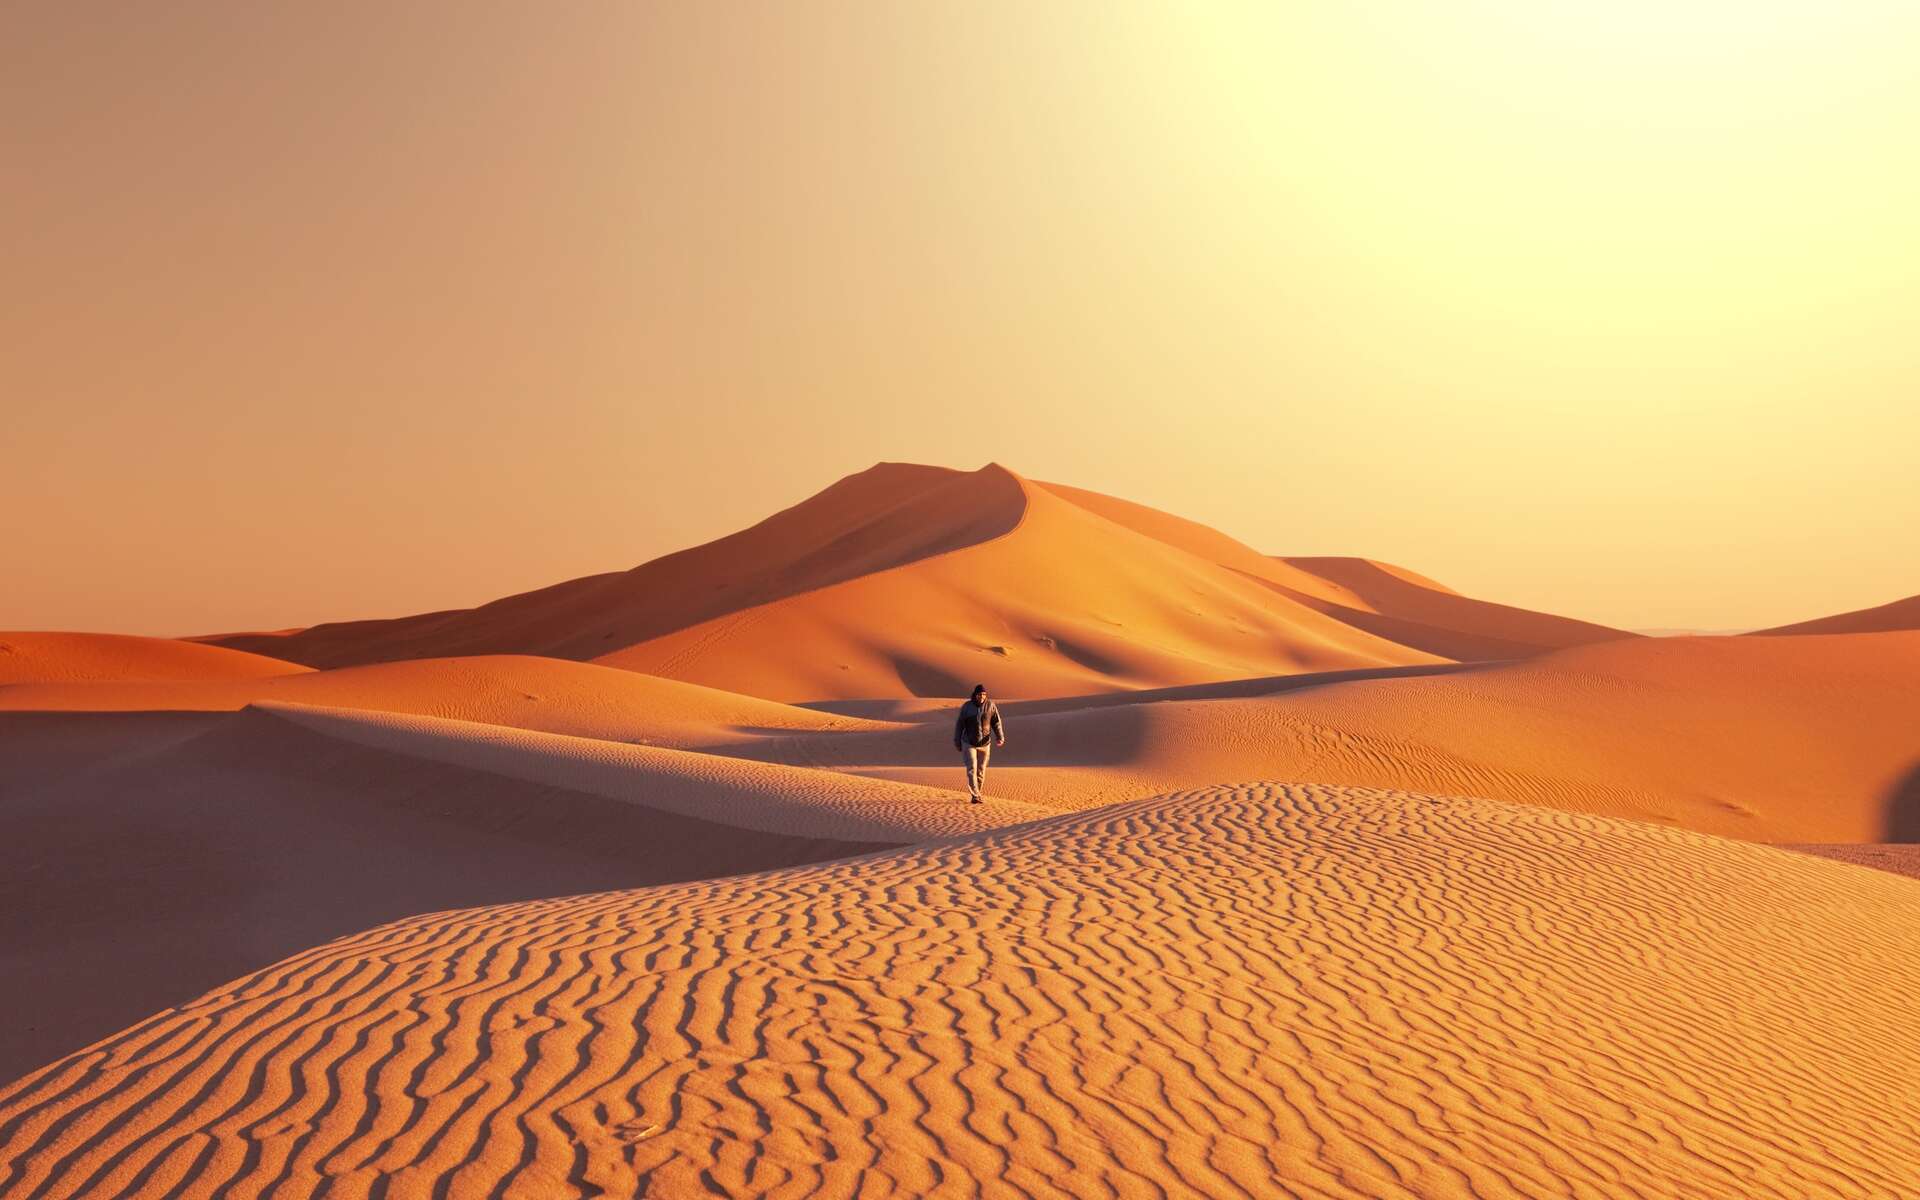 Dune : où sont les paysages magnifiques de la planète Arrakis sur Terre ?